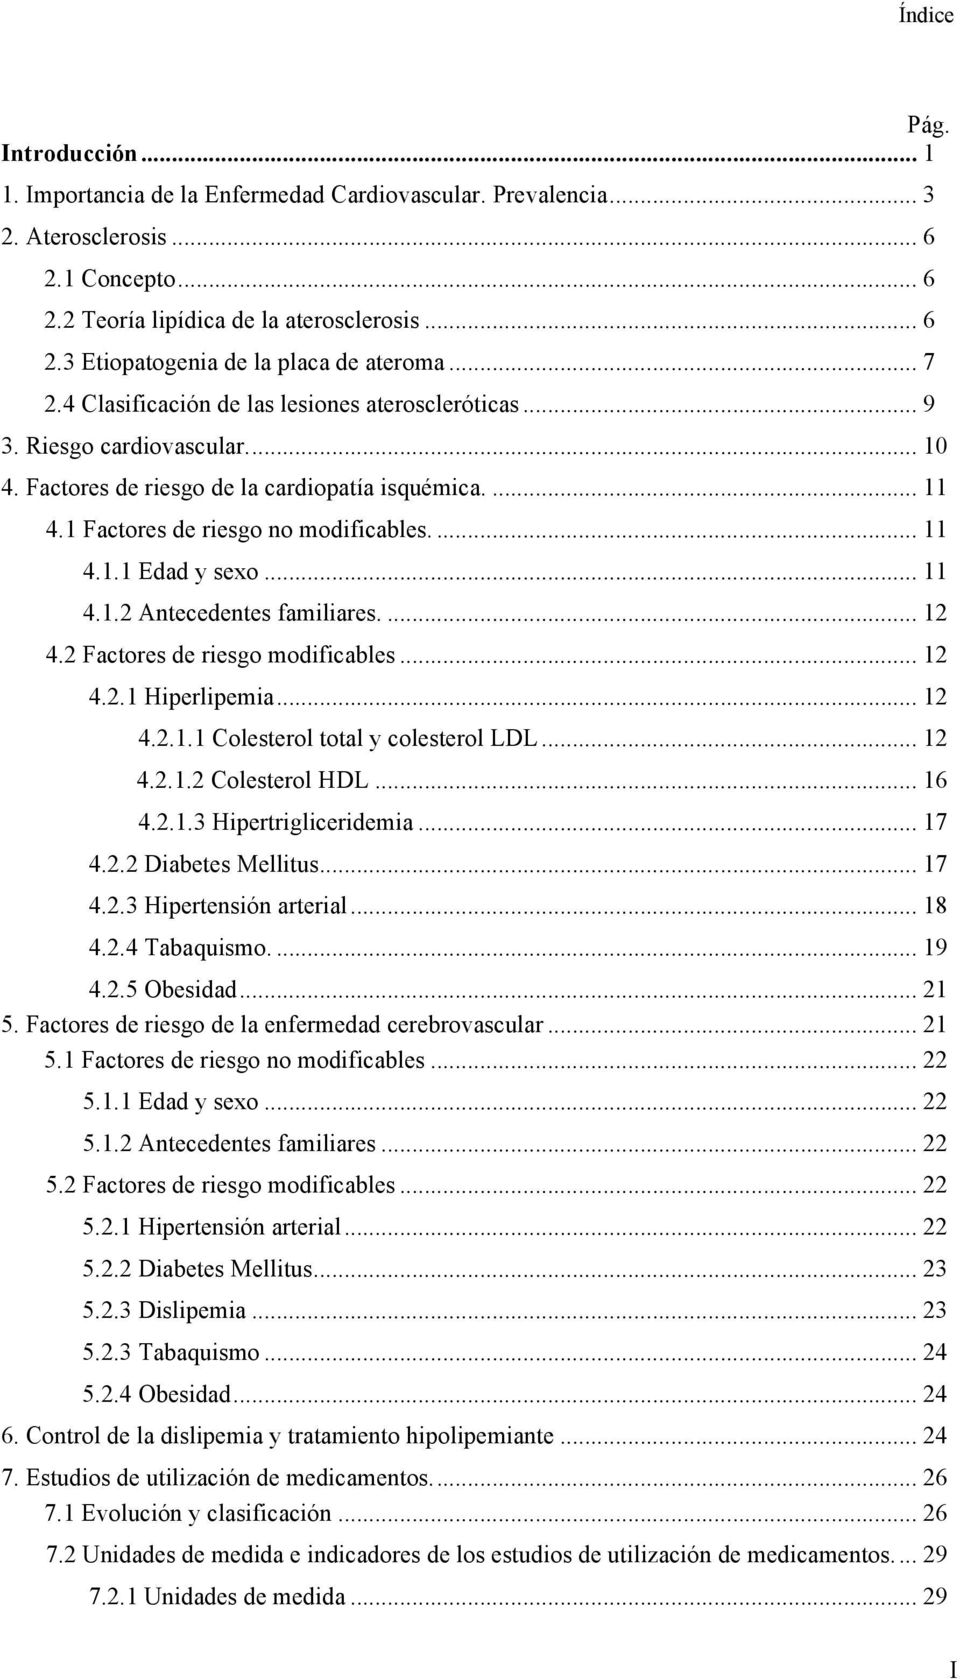 .. 11 4.1.2 Antecedentes familiares.... 12 4.2 Factores de riesgo modificables... 12 4.2.1 Hiperlipemia... 12 4.2.1.1 Colesterol total y colesterol LDL... 12 4.2.1.2 Colesterol HDL... 16 4.2.1.3 Hipertrigliceridemia.